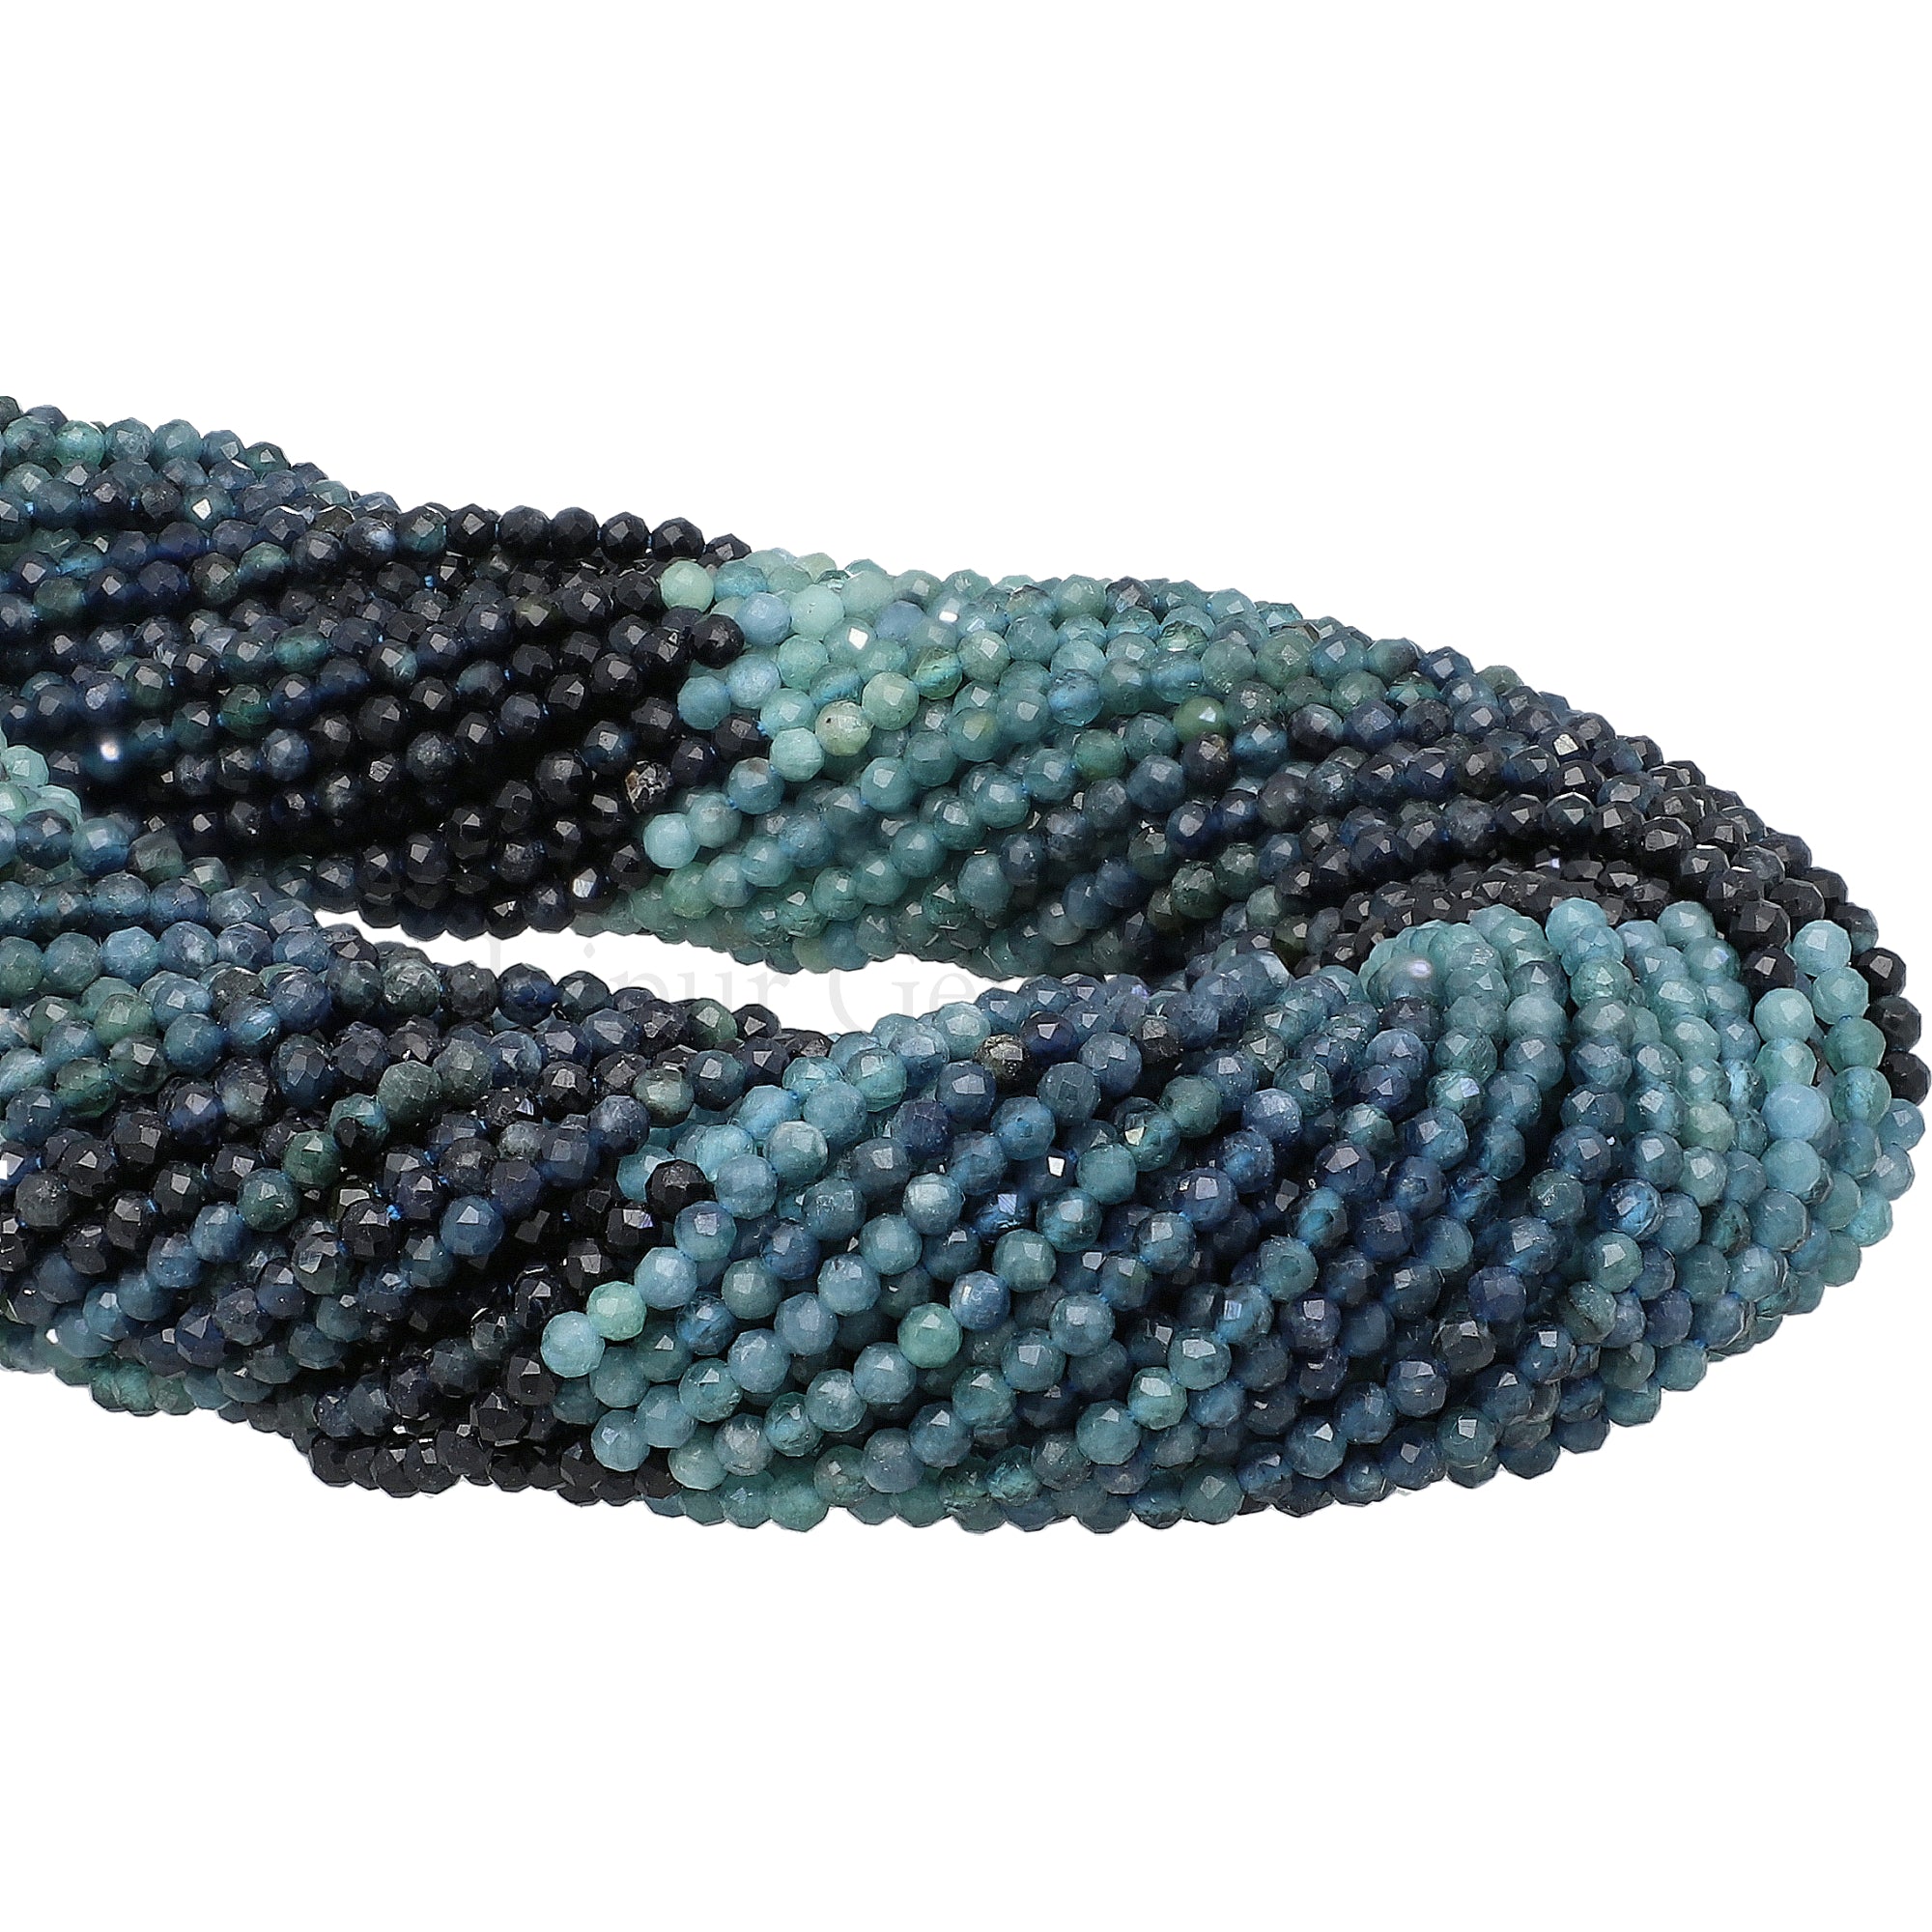 2 - 2.5 MM Multi Grandidierite Faceted Round Beads